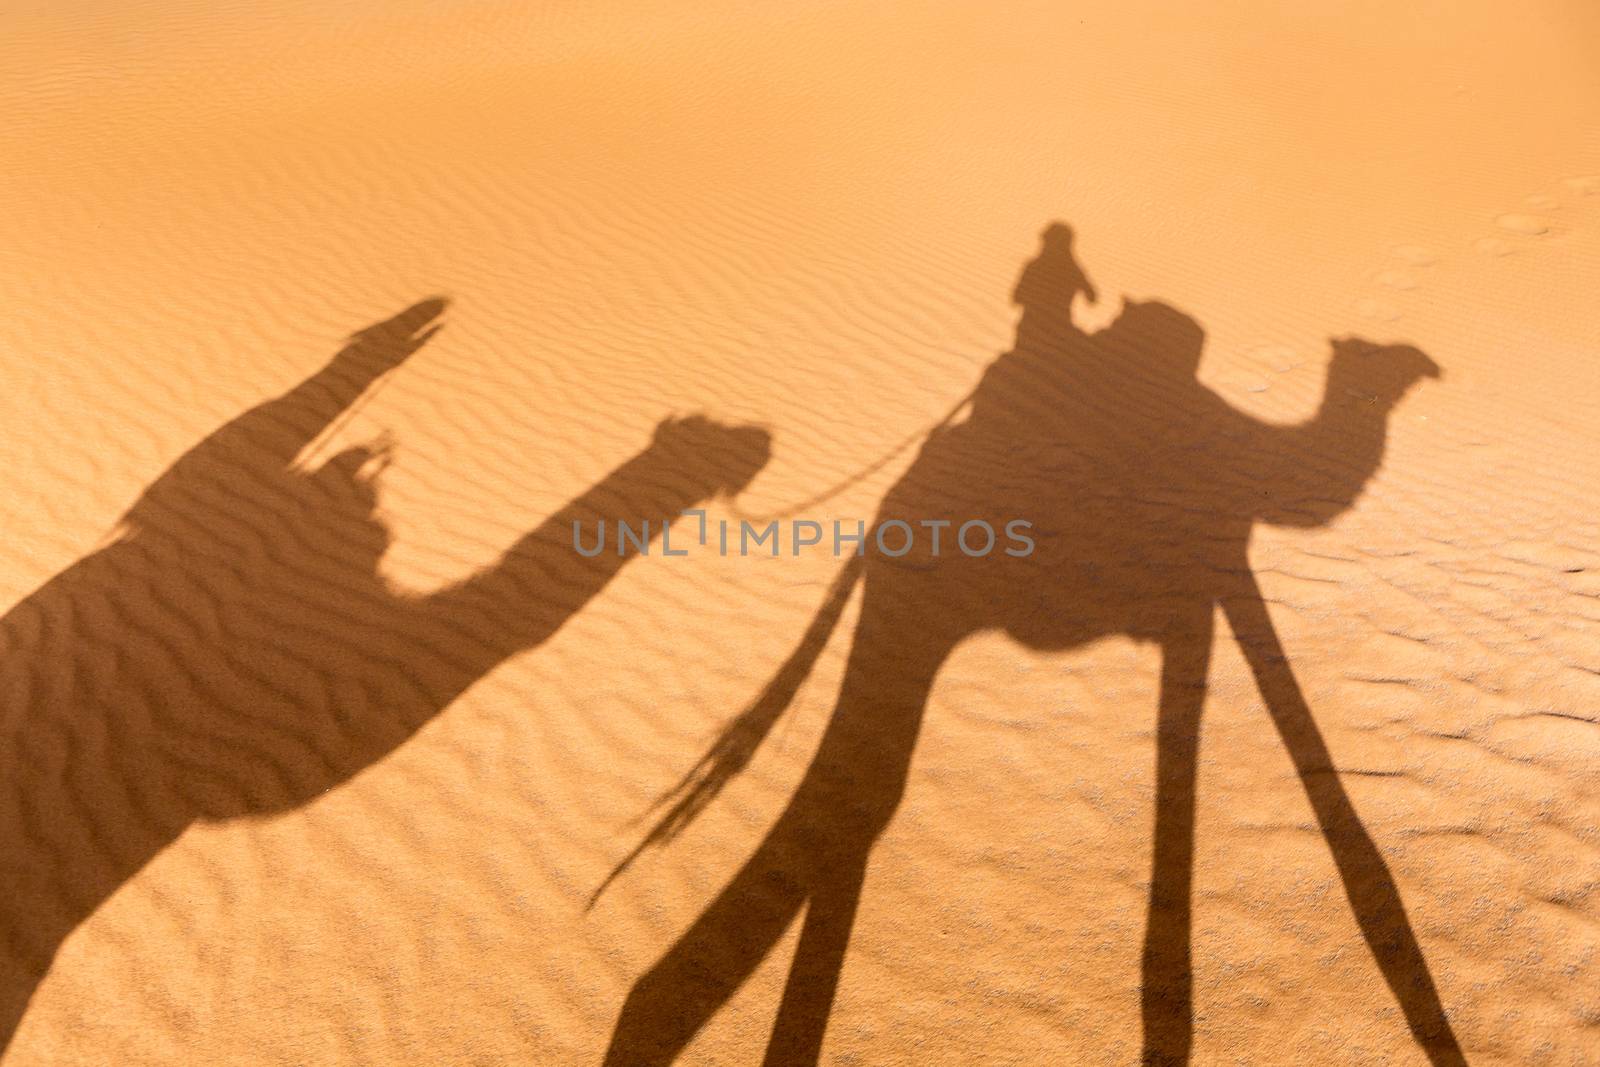 Merzouga in the Sahara Desert in Morocco